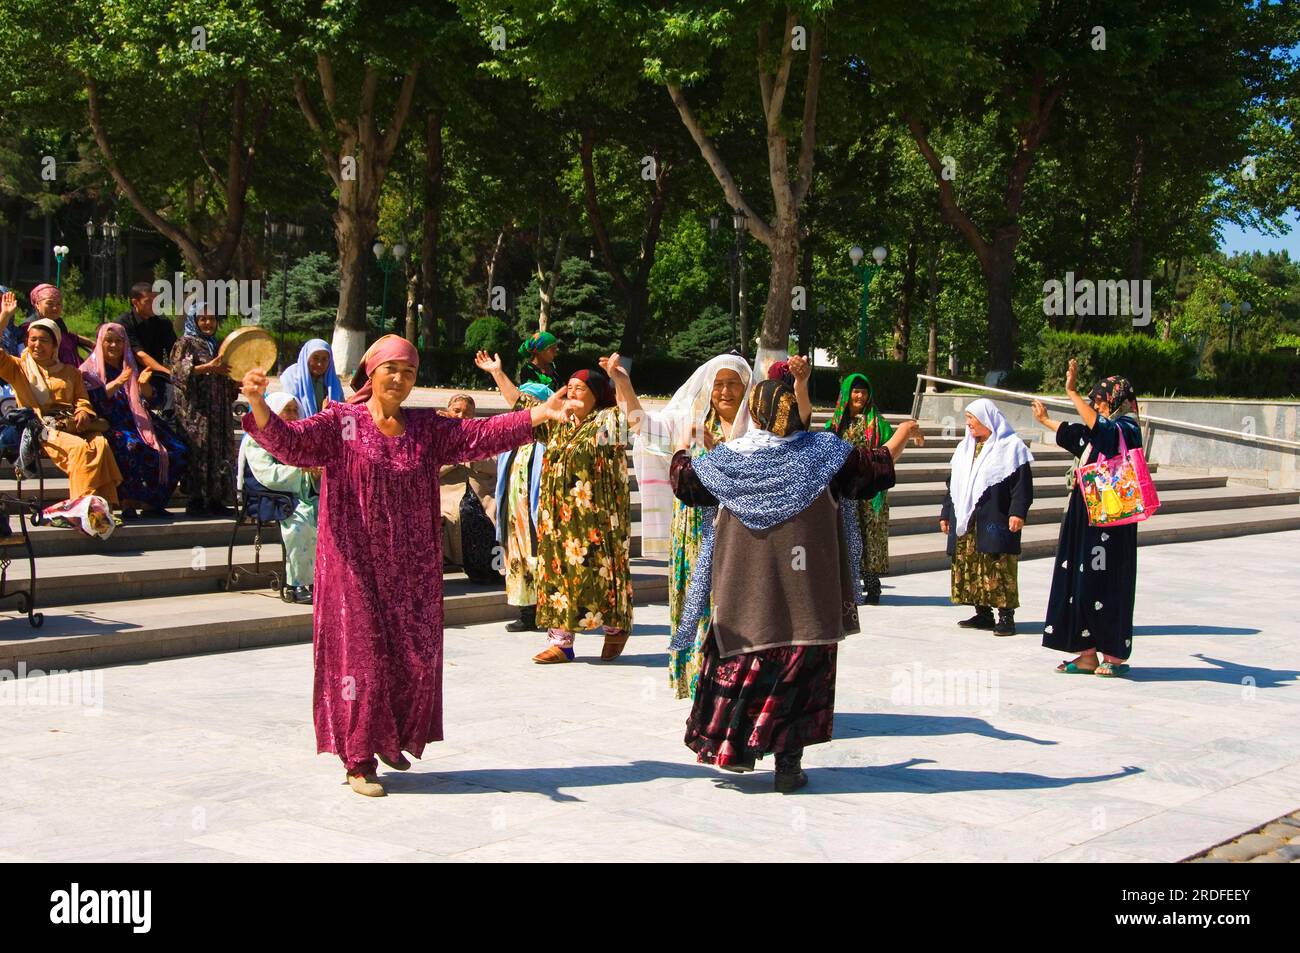 Dancing Uzbek women, Samarkand, Uzbekistan Stock Photo